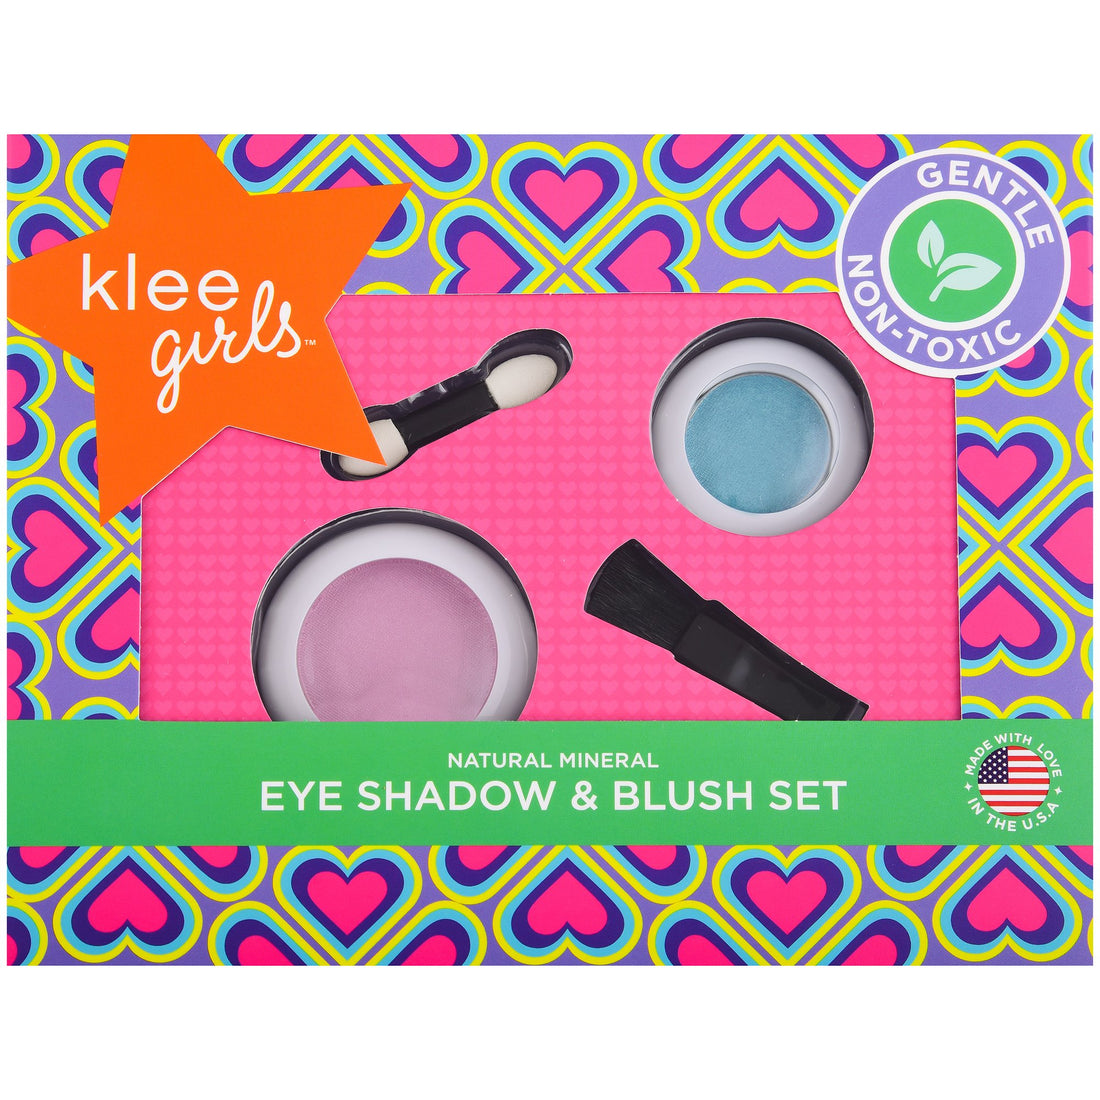 Klee Girls Pressed Eyeshadow &amp; Blush Set 2PC (Wink &amp; Smile) 天然礦物眼影胭脂2件組合 (眉開眼笑)